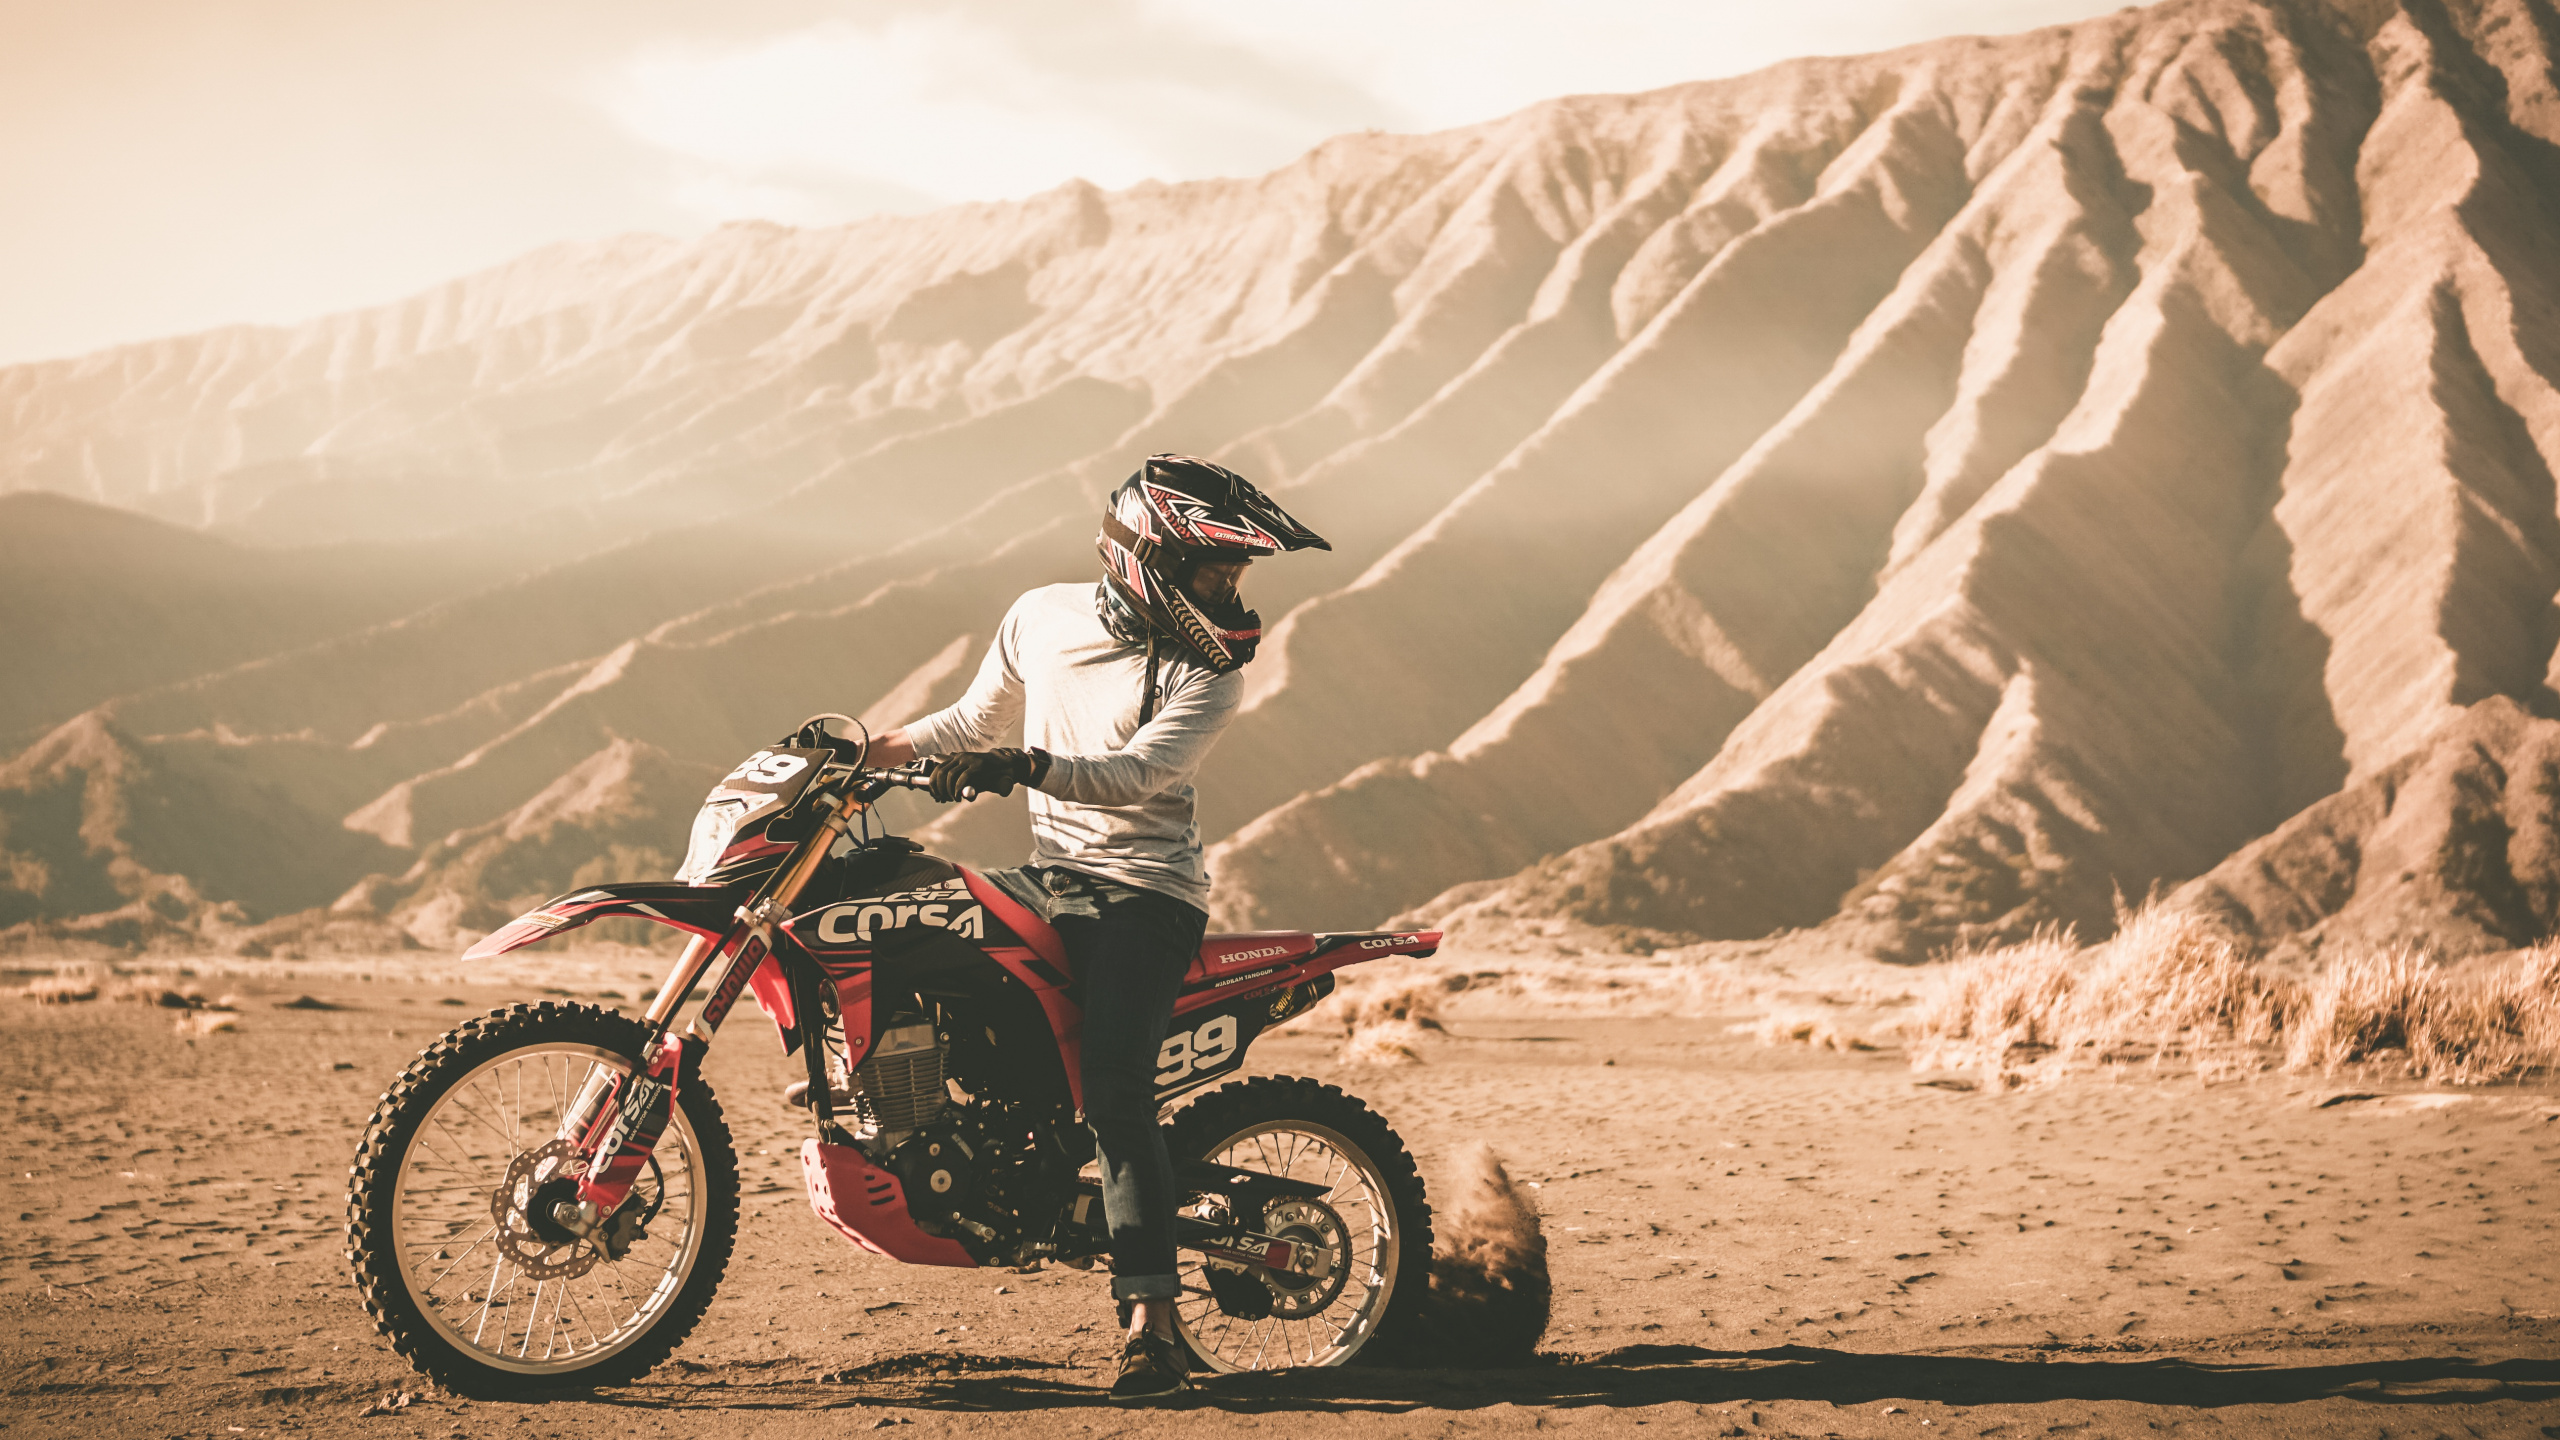 Hombre Montando Motocross Dirt Bike en Camino de Tierra Durante el Día. Wallpaper in 2560x1440 Resolution